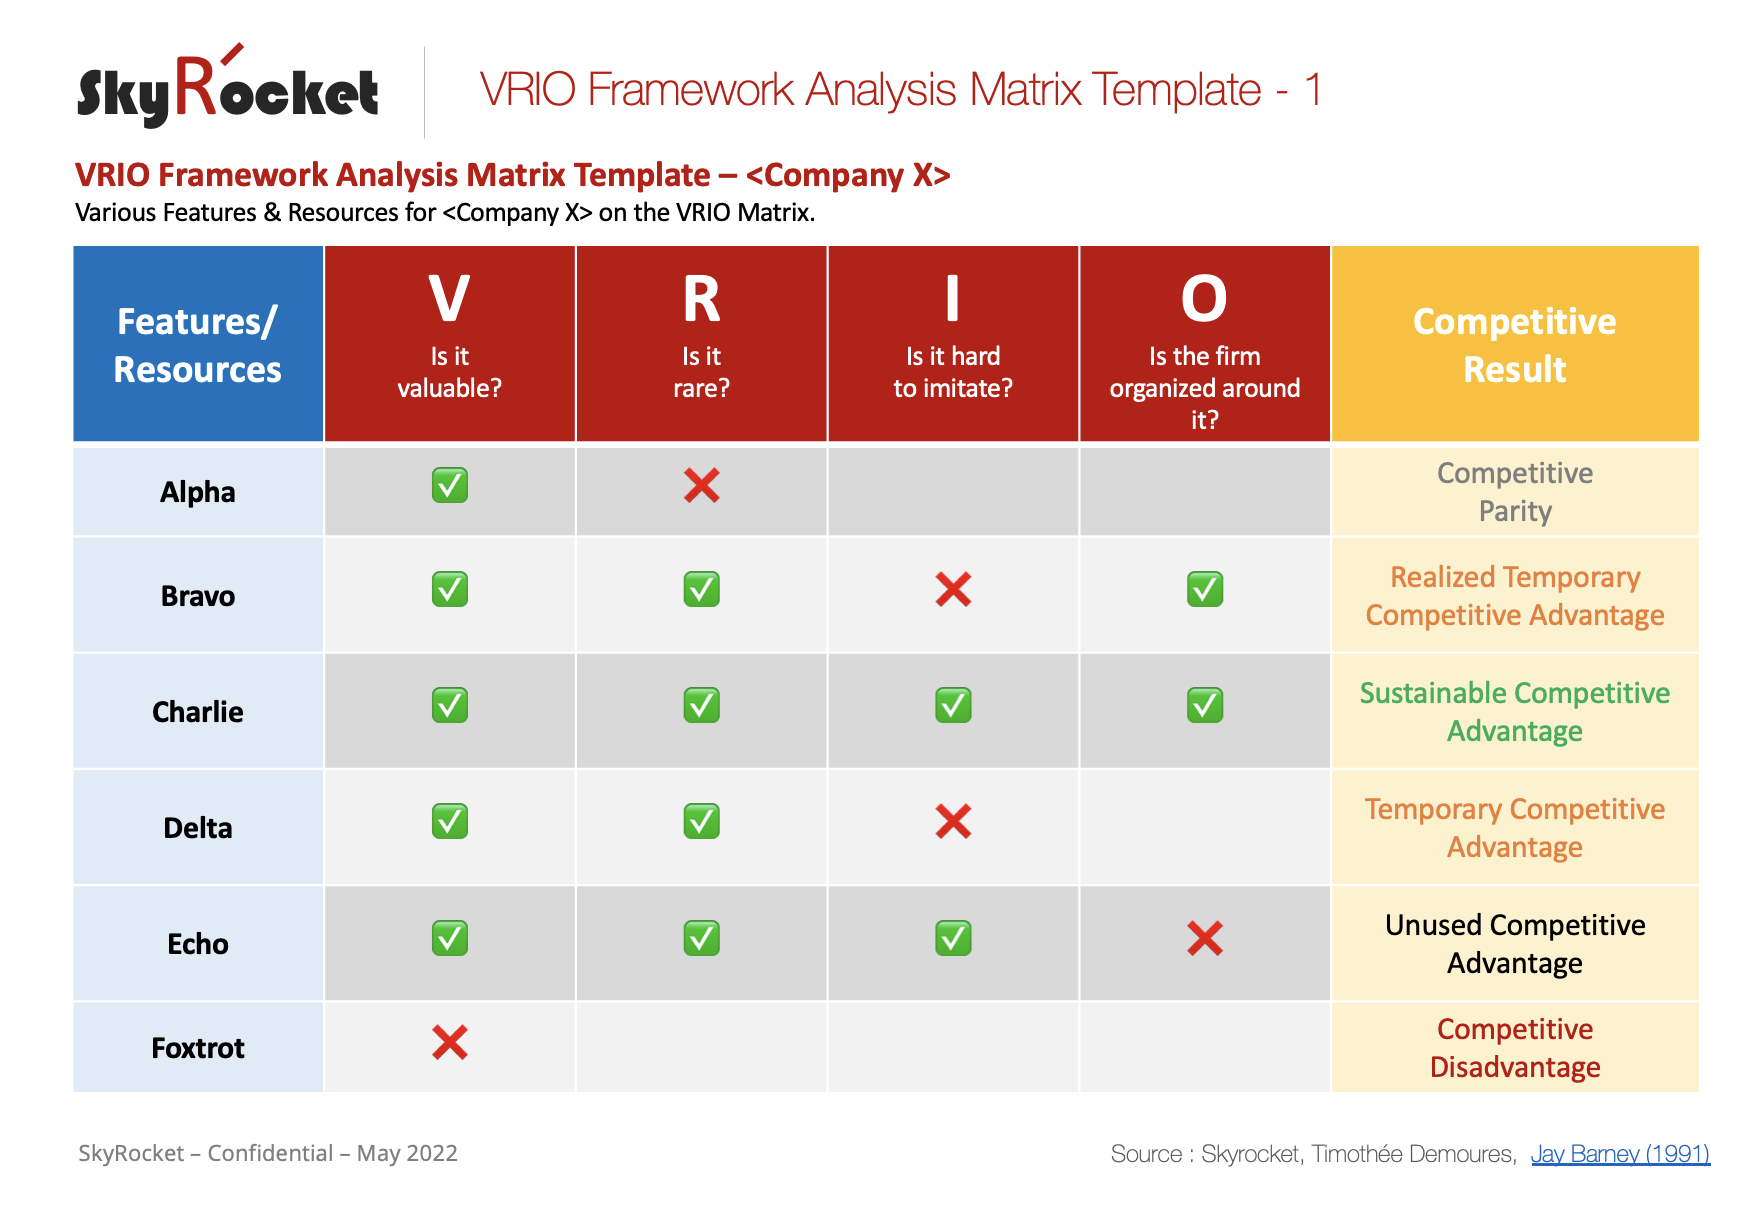 How to Use VRIO Framework